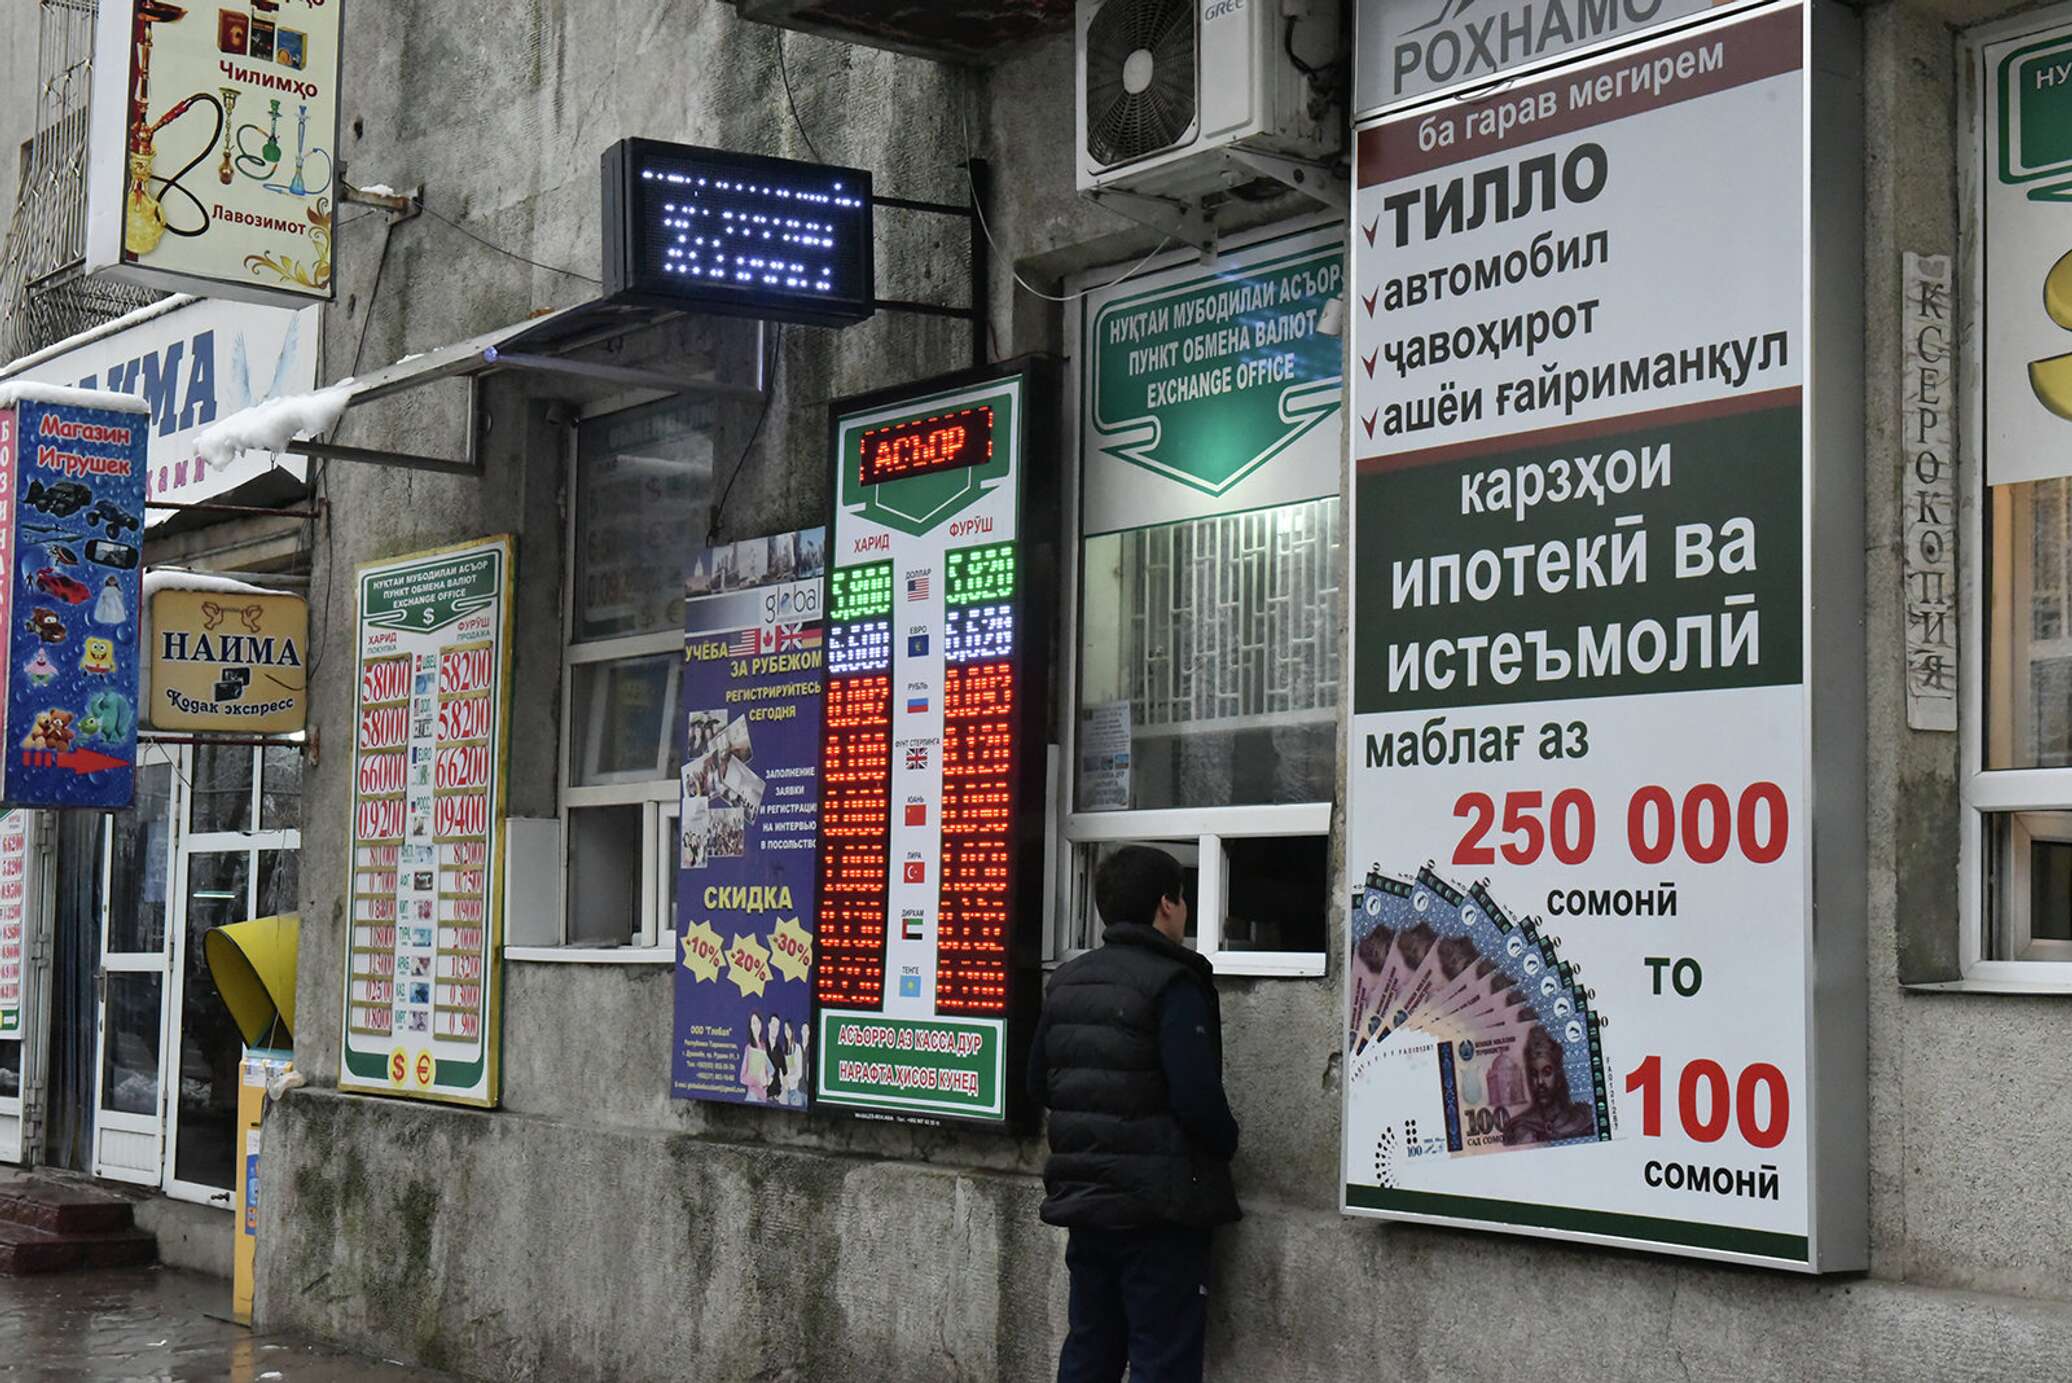 Таджикский к доллару. Обмен валюты. Обменник валют. Курсы валют в Таджикистане. Обменные пункты в Таджикистане.